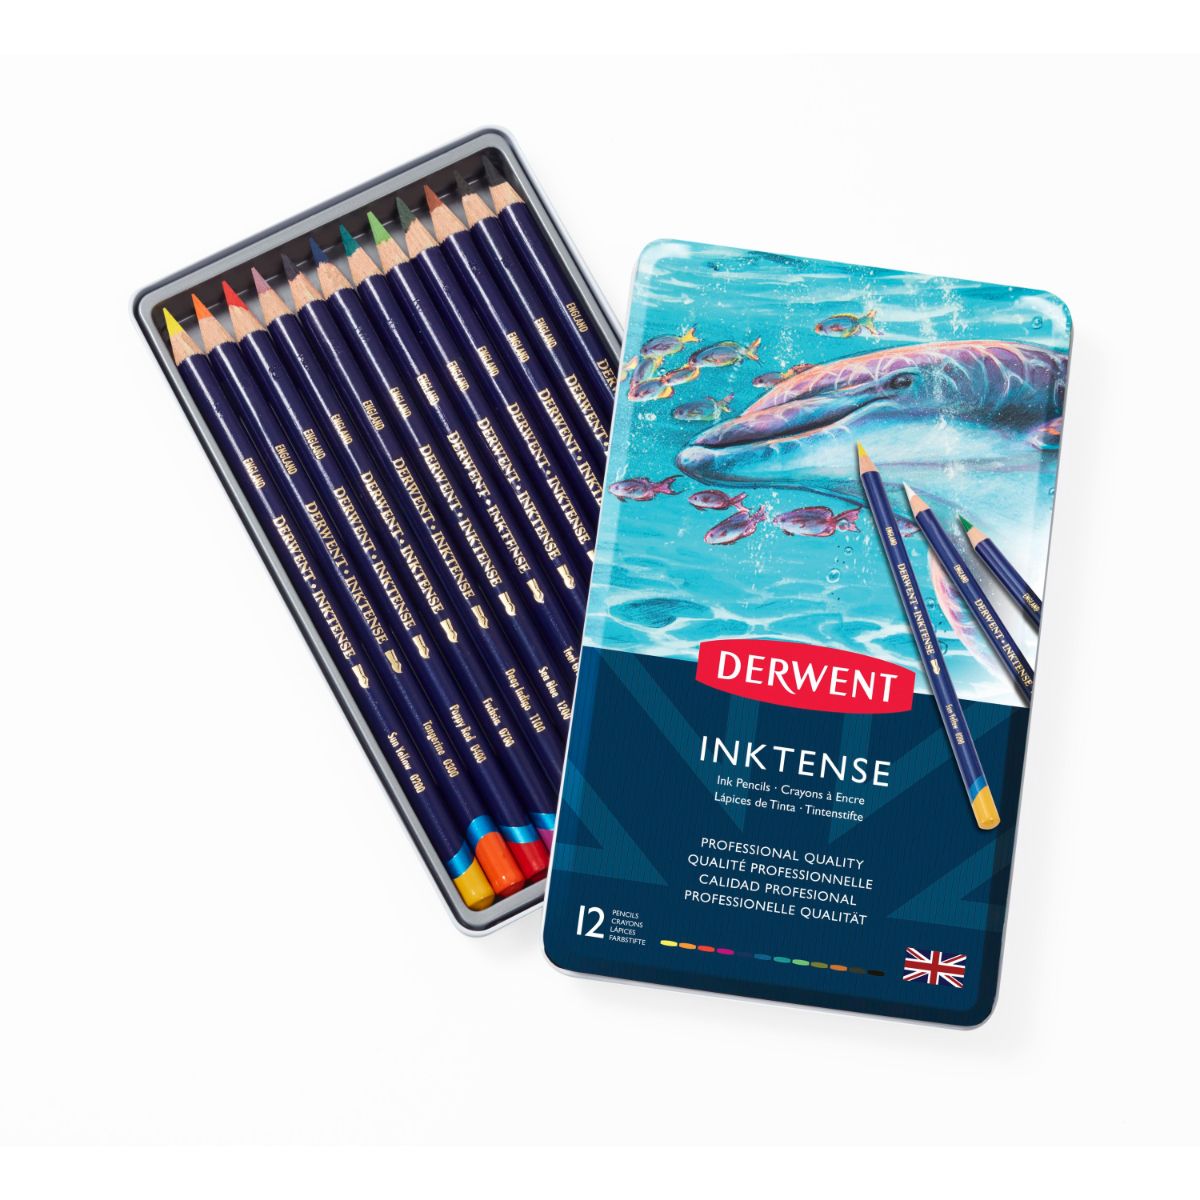 ダーウェント インクテンスペンシル メタルケース 12色セット 文具 高級色鉛筆 布ペン イギリス製